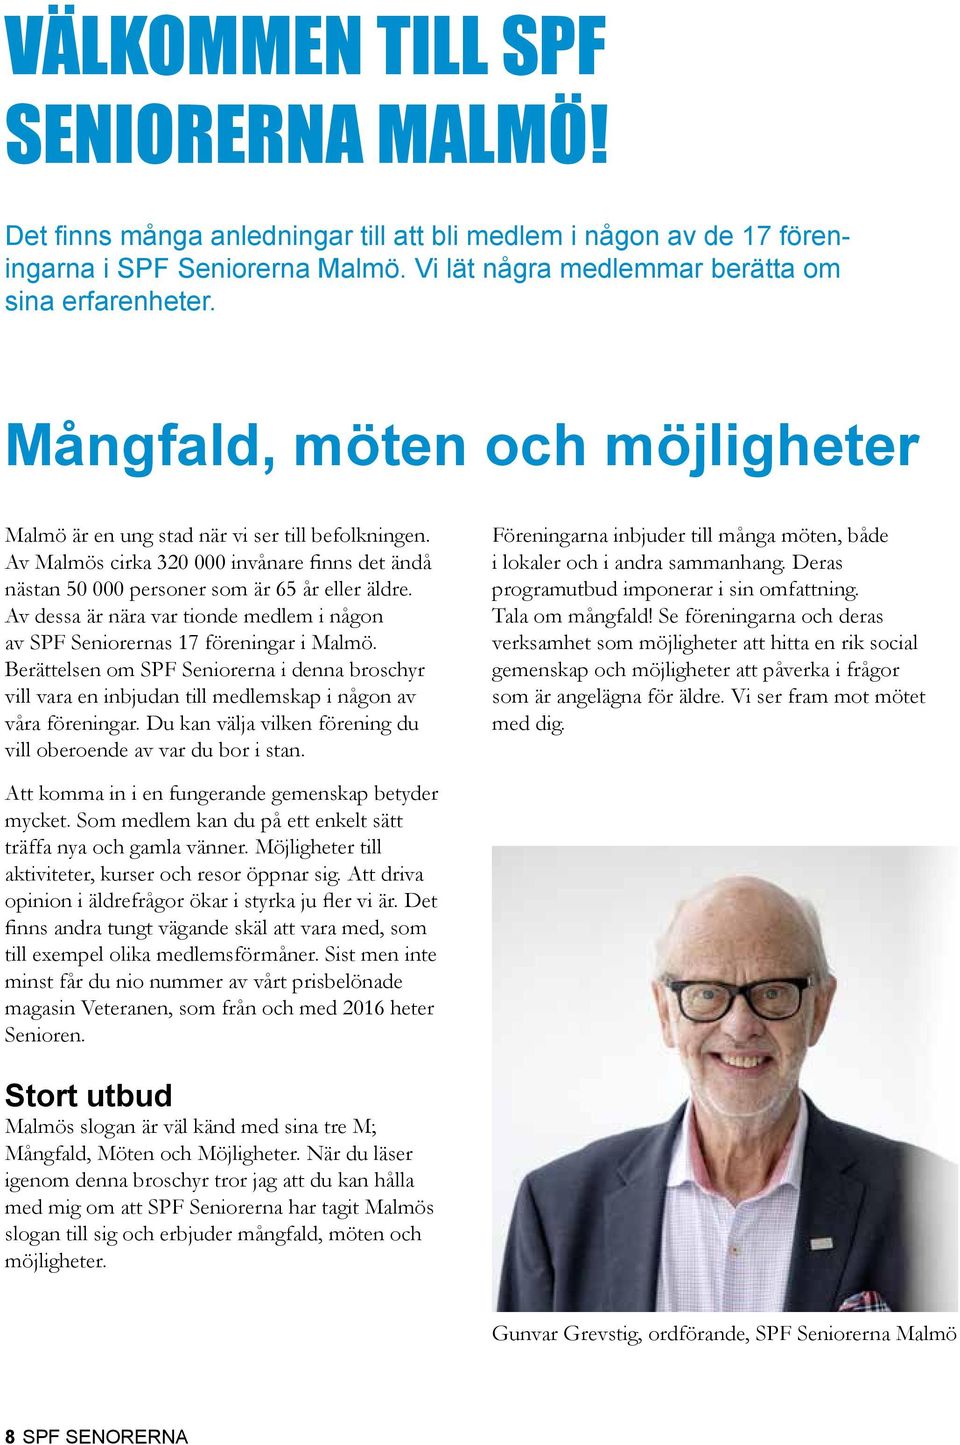 Av dessa är nära var tionde medlem i någon av SPF Seniorernas 17 föreningar i Malmö. Berättelsen om SPF Seniorerna i denna broschyr vill vara en inbjudan till medlemskap i någon av våra föreningar.